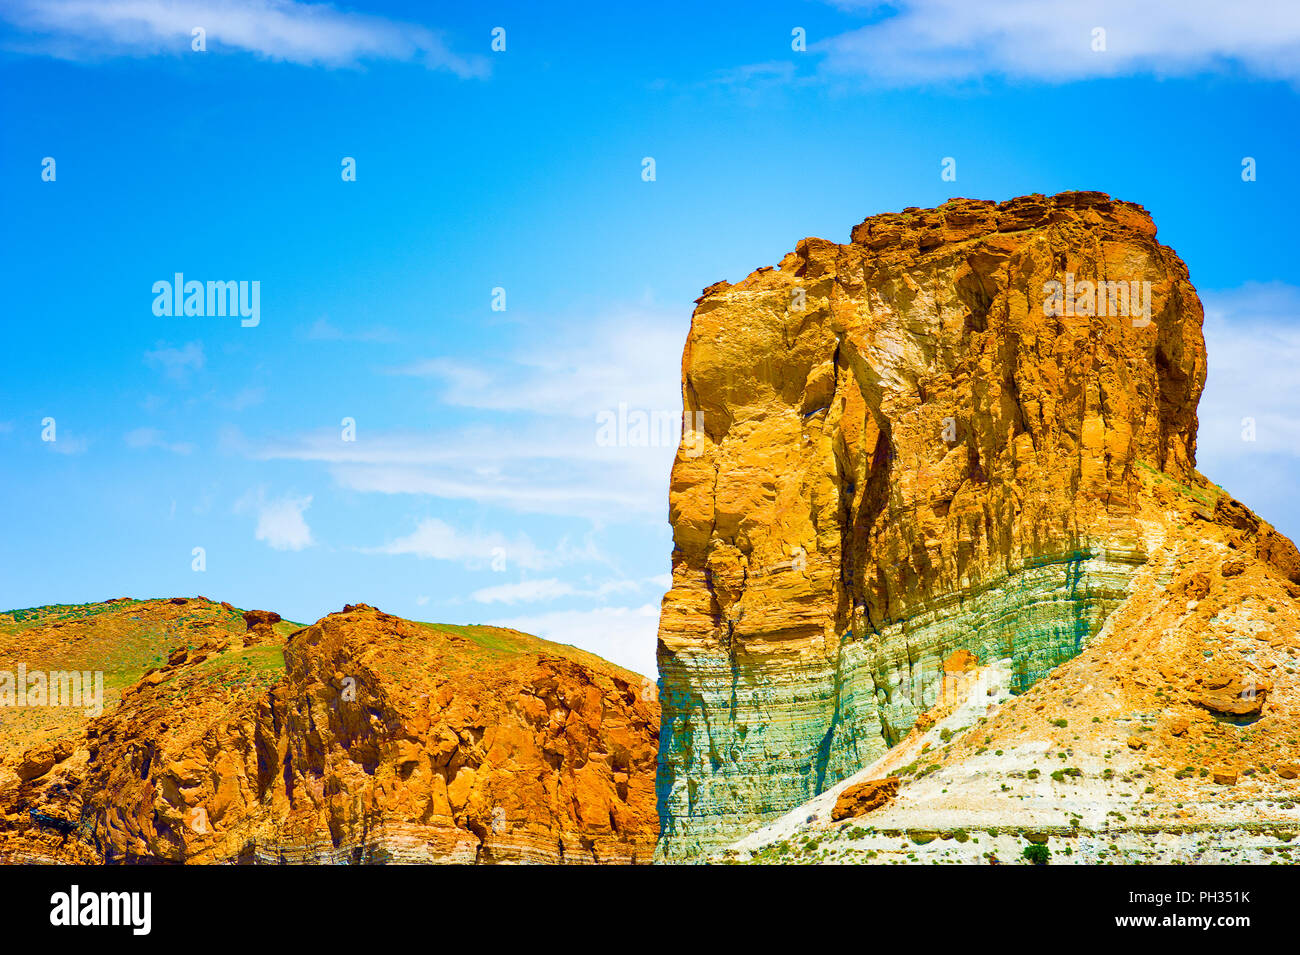 Deserto di roccia calcarea forme visibile appena al di fuori di Ogden Utah. Foto Stock